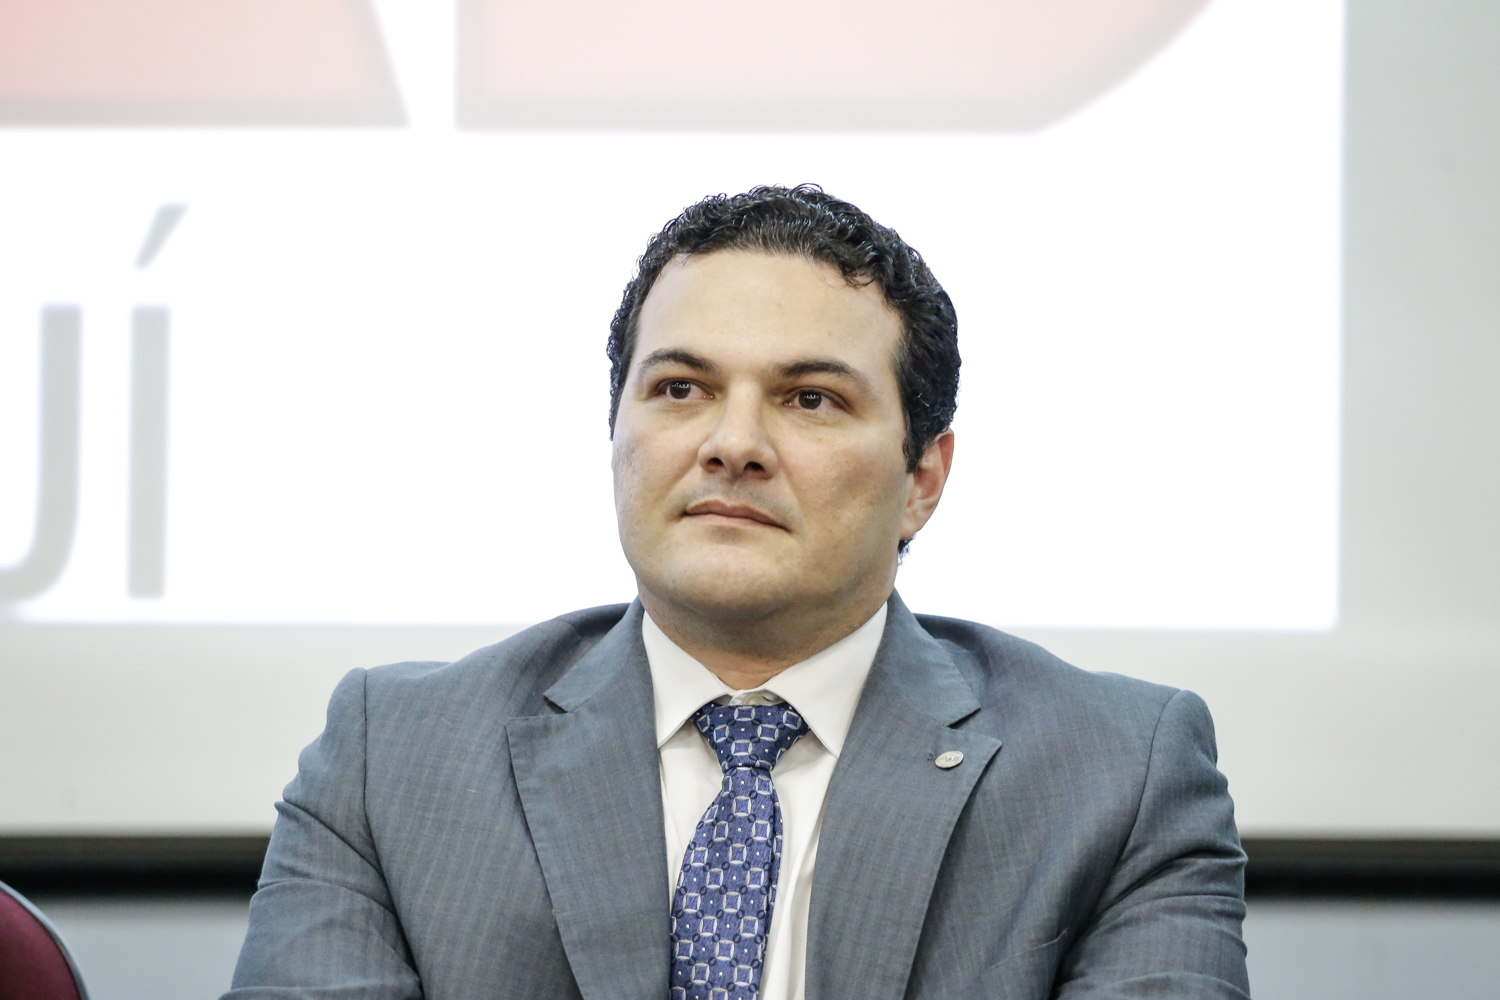 Advogado Celso Barros Neto 